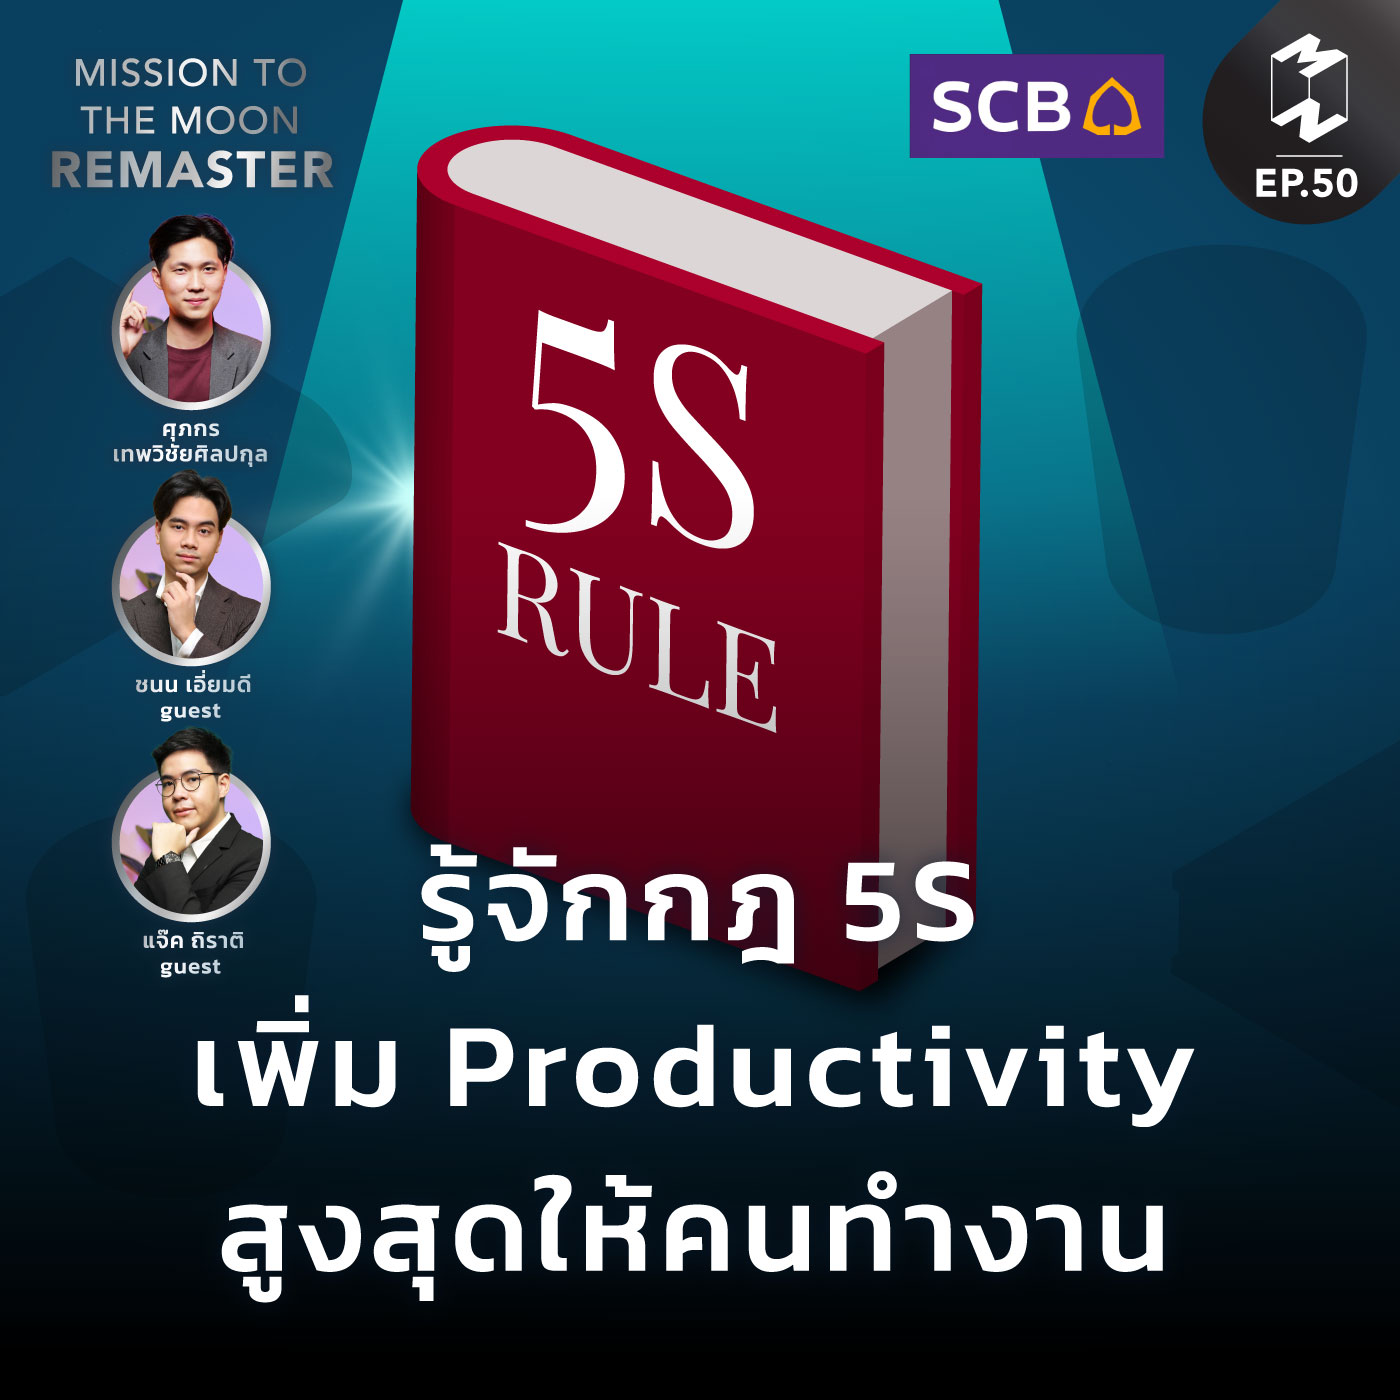 รู้จักกฎ 5S ช่วยเพิ่ม Productivity สูงสุดให้คนทำงาน | MM Remaster  EP.50